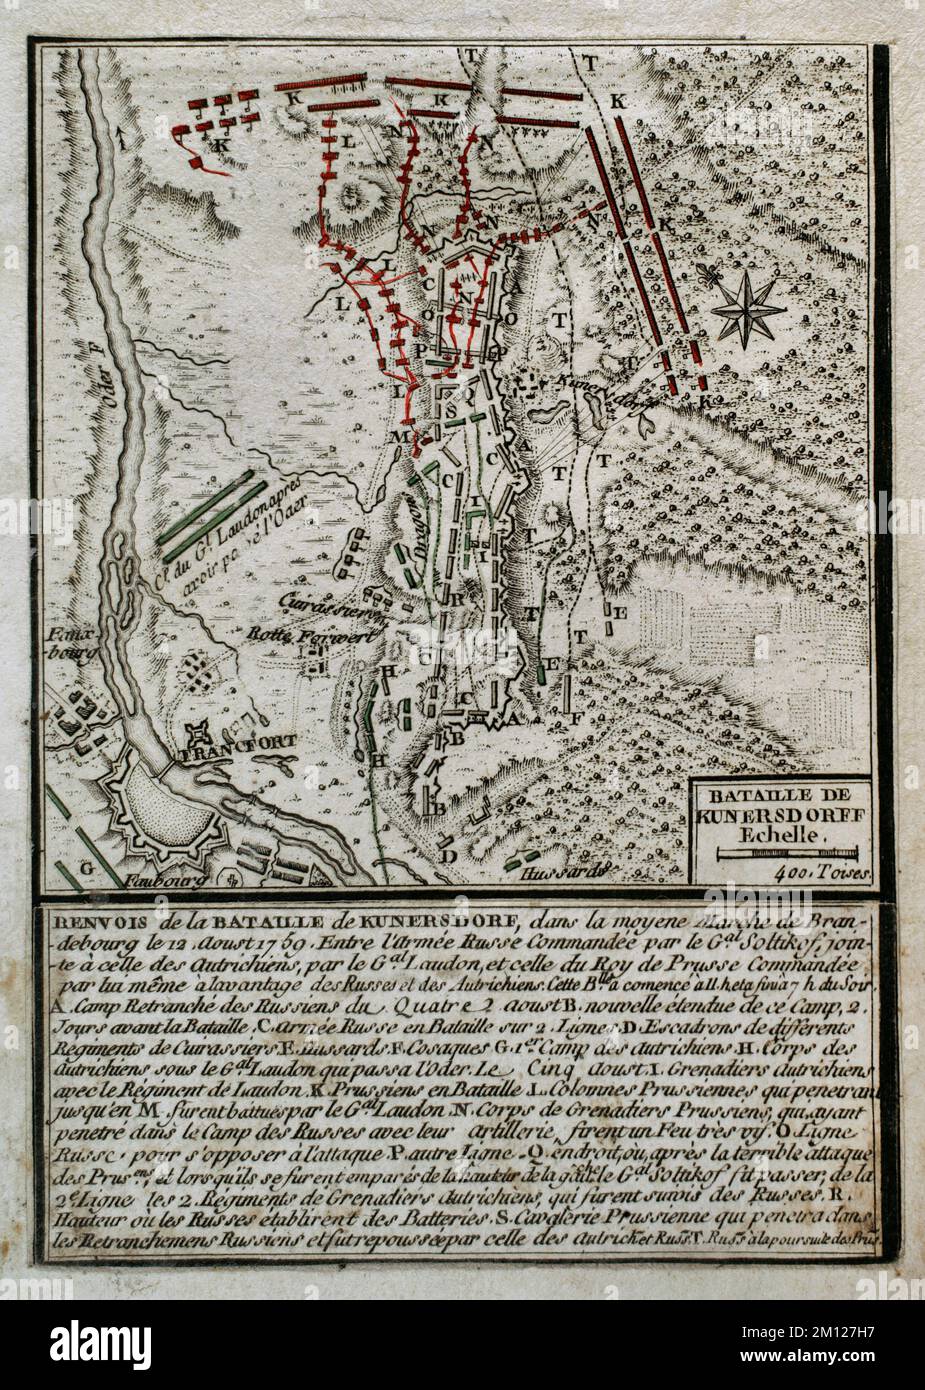 Guerre de sept ans (1756-1763). Bataille de Kunersdorf (12th août 1759) (Kunowice à l'heure actuelle). Elle a eu lieu à Neumark, près de la ville de Kunersdorf (aujourd'hui Kunowice). Une armée prussienne, dirigée par Frédéric le Grand, a été opposée à une armée alliée des forces russo-autrichiennes. Le général Saltykov a commandé le contingent russe et le général Loudon a dirigé les Autrichiens. Les Prussiens ont été battus. Publié en 1765 par le cartographe Jean de Beaurain (1696-1771) comme illustration de sa Grande carte d'Allemagne, avec les événements qui ont eu lieu pendant la guerre de sept ans. Gravure et gravure. Édition française, 1 Banque D'Images